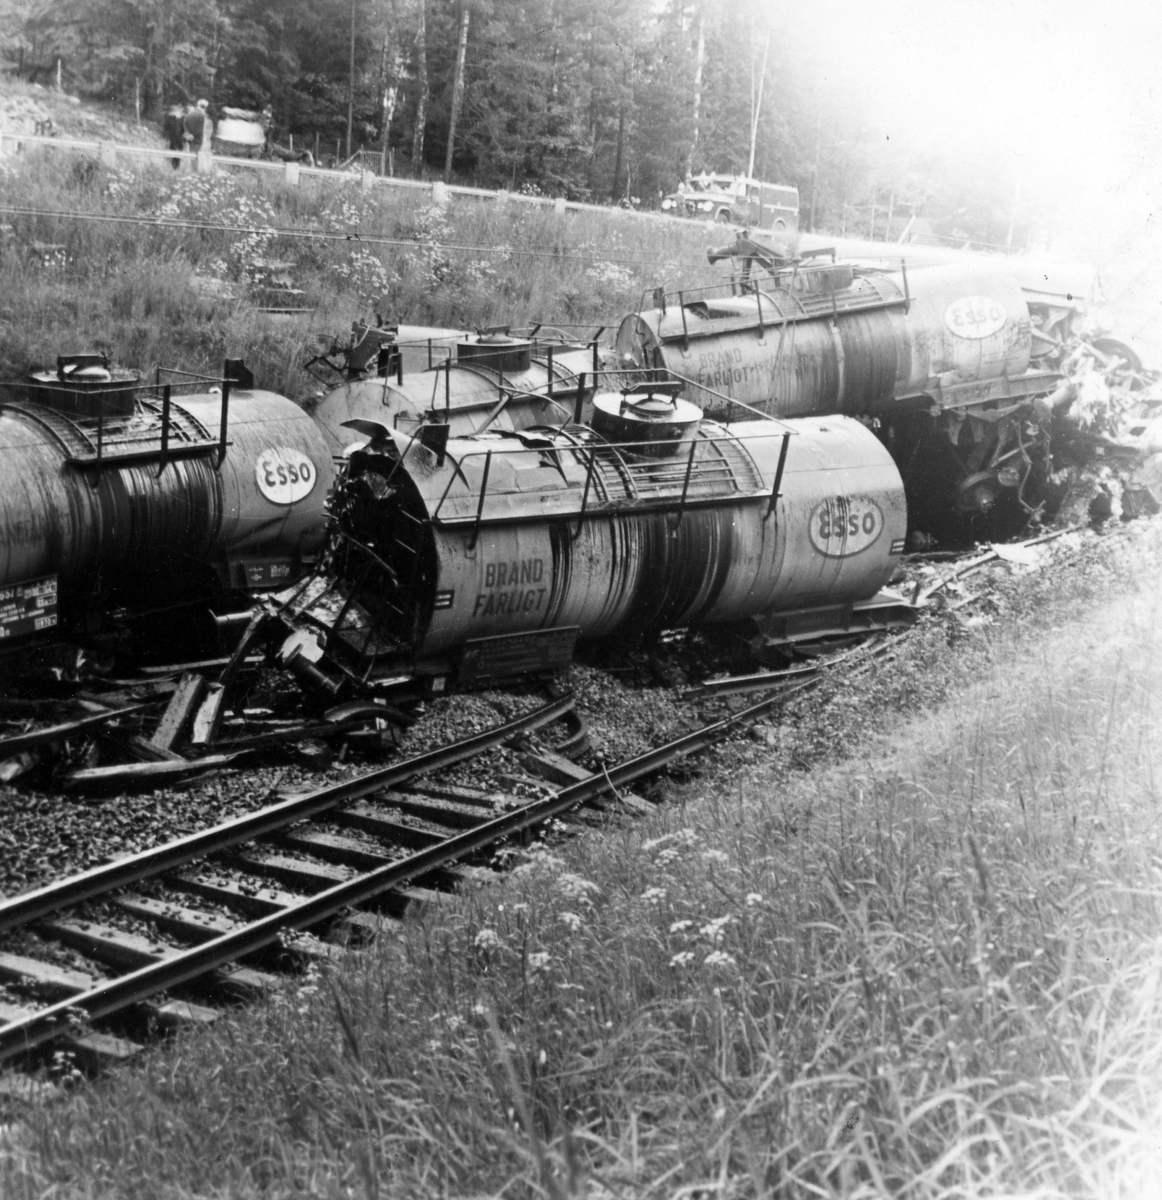 Tågurspårning i Västra Bodarne 13 juni 1966 ca kl 19.20. Tåget transporterade olja och omkring 170 kubikmeter eldningsolja rann ut på platsen. Sanneringen kostade SJ runt 1,3 miljoner kronor.